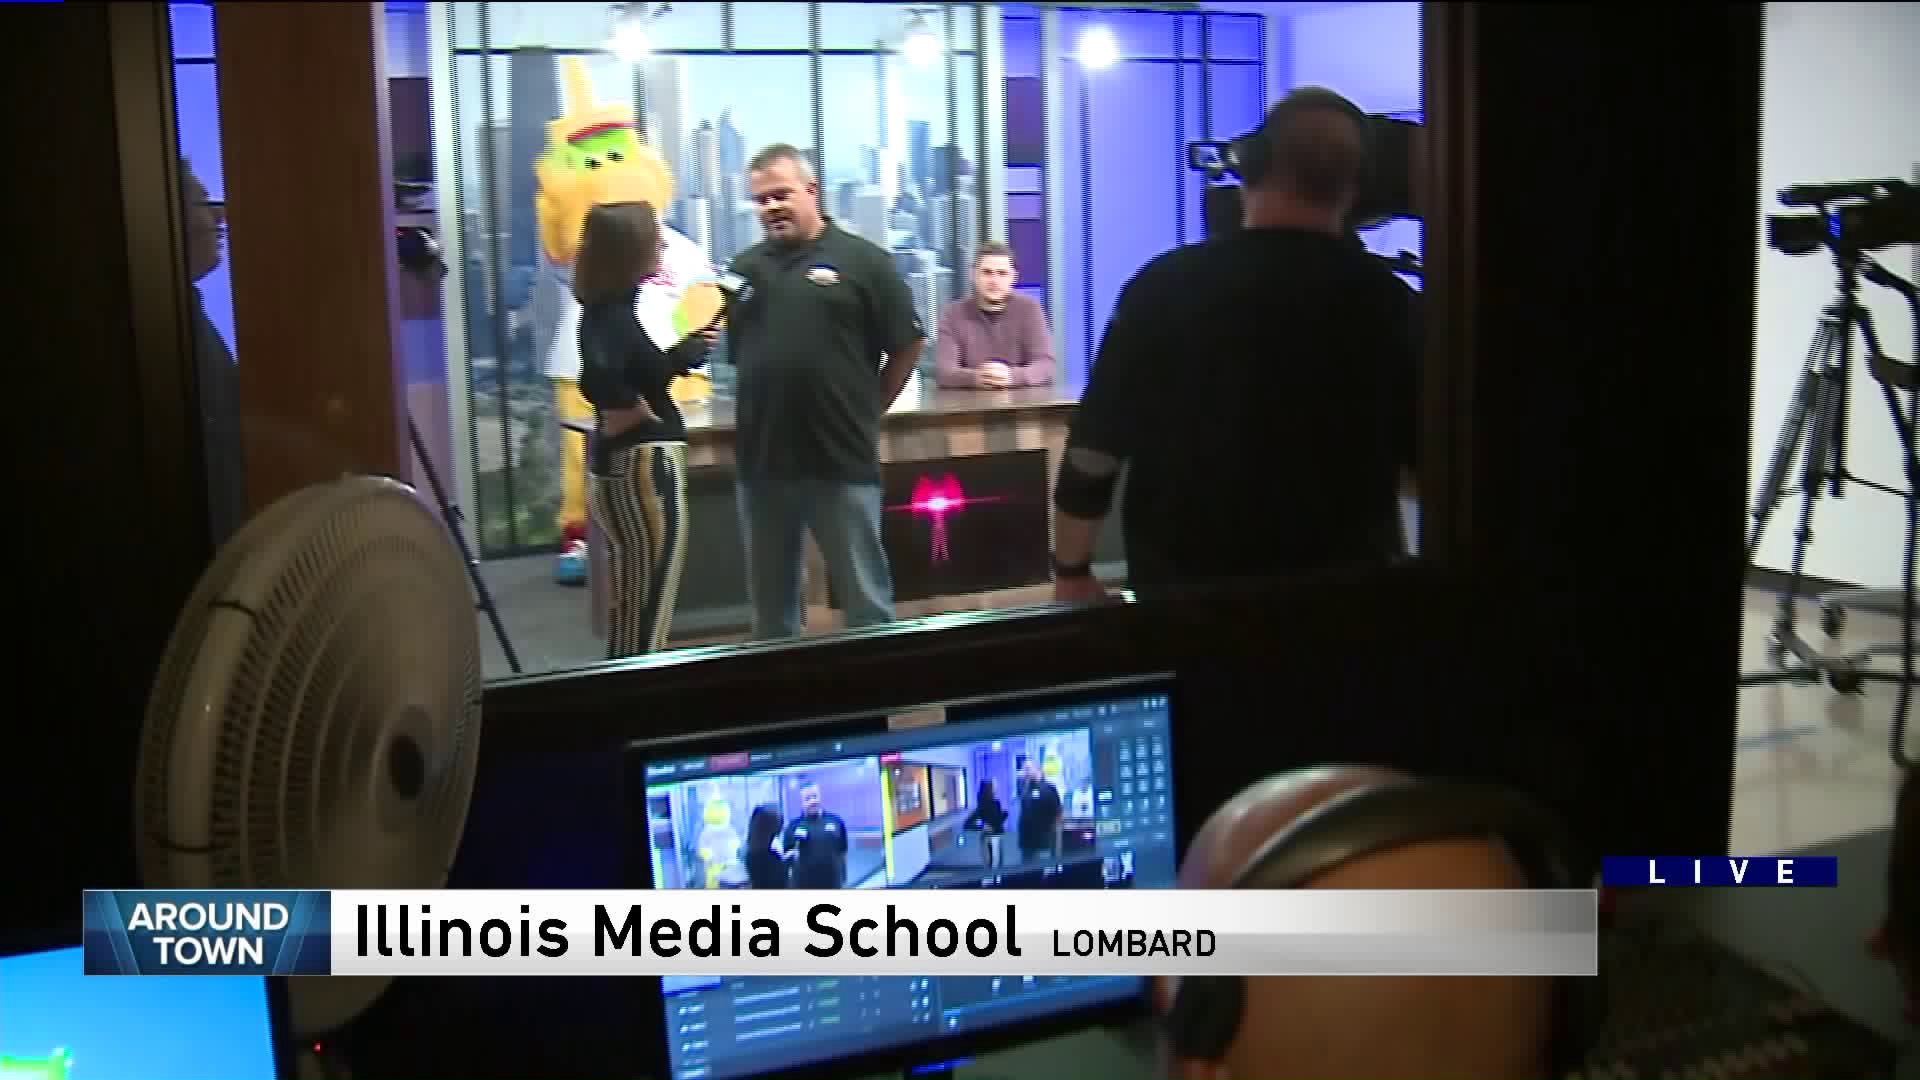 Around Town checks out Illinois Media School